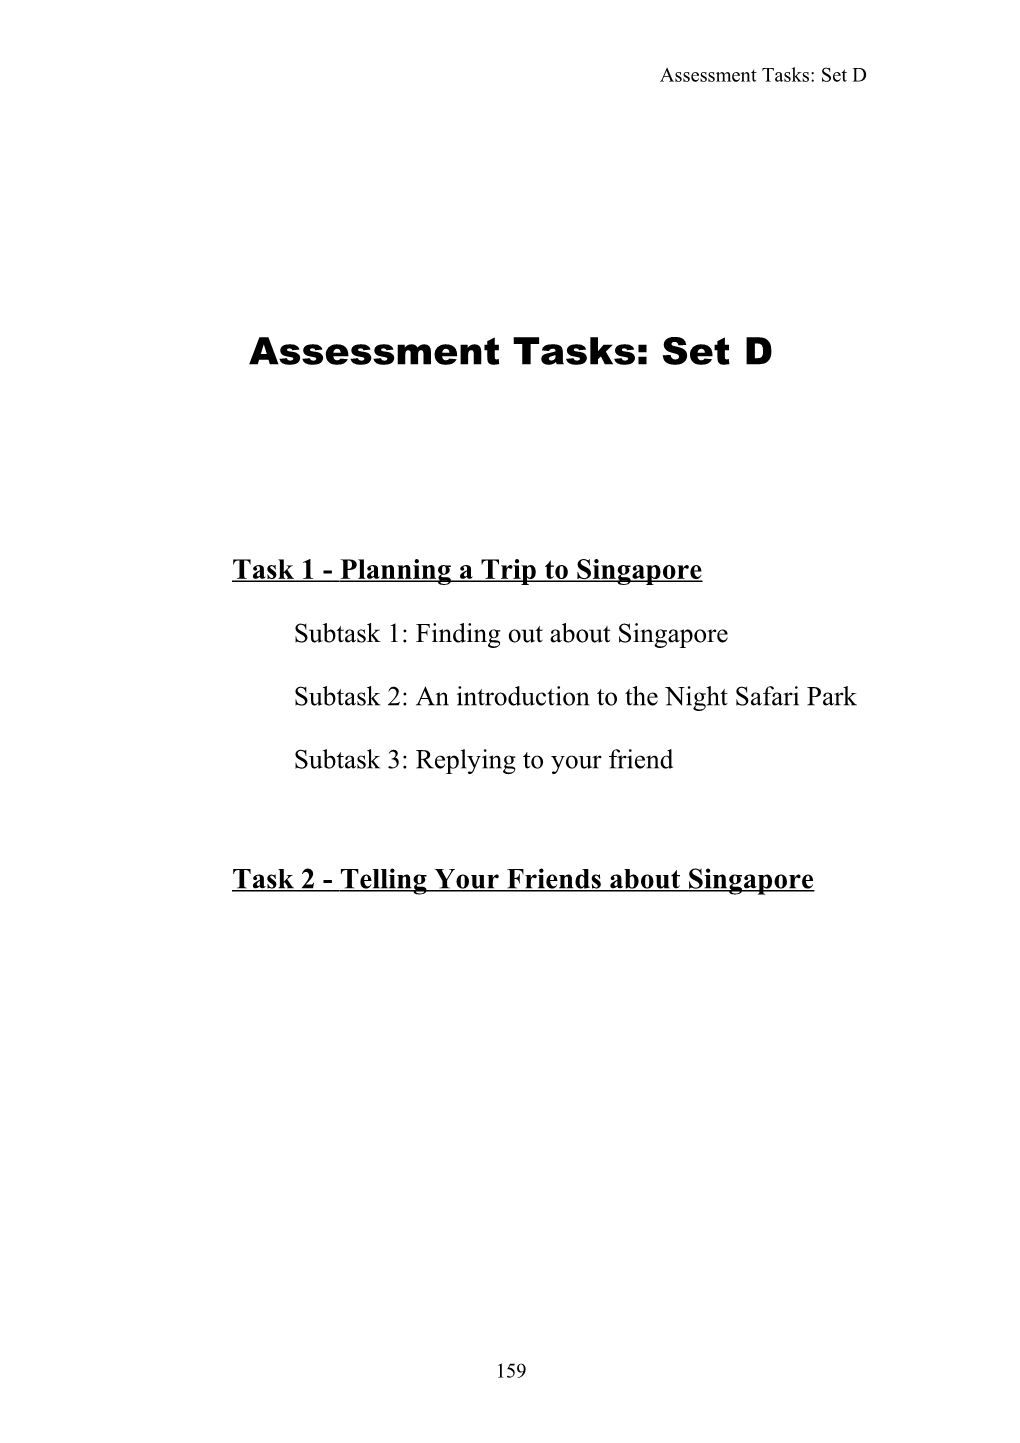 Task-Based Assessment for Learning